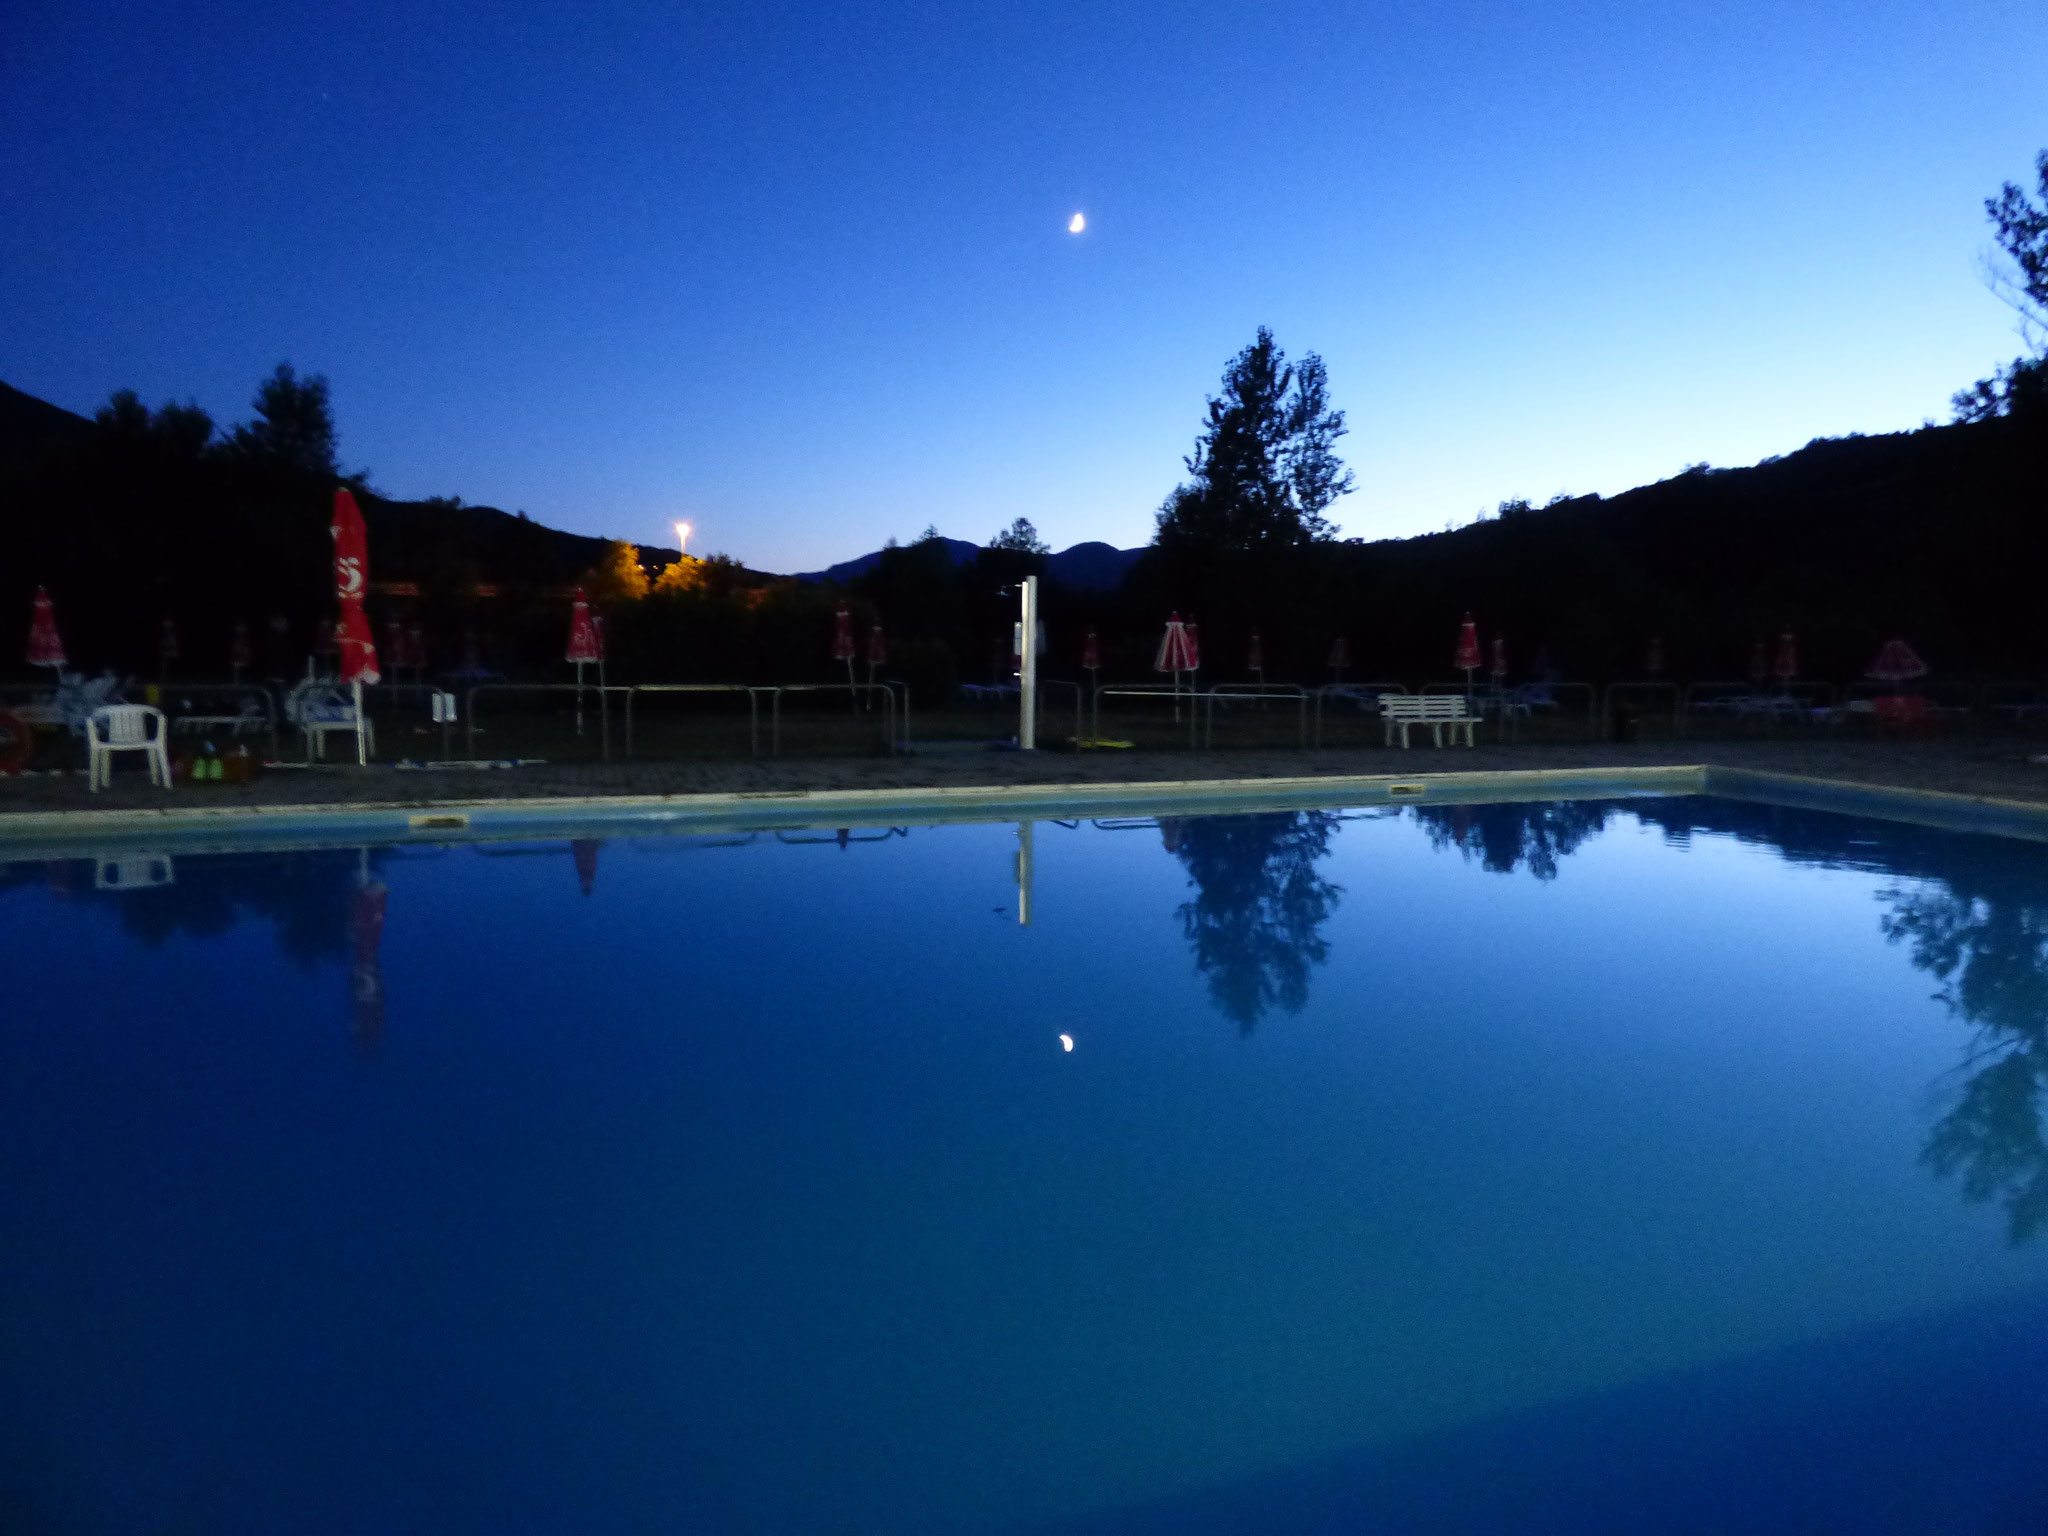 Cinema in piscina, a Perino si può. La prima cine – piscina della val trebbia.